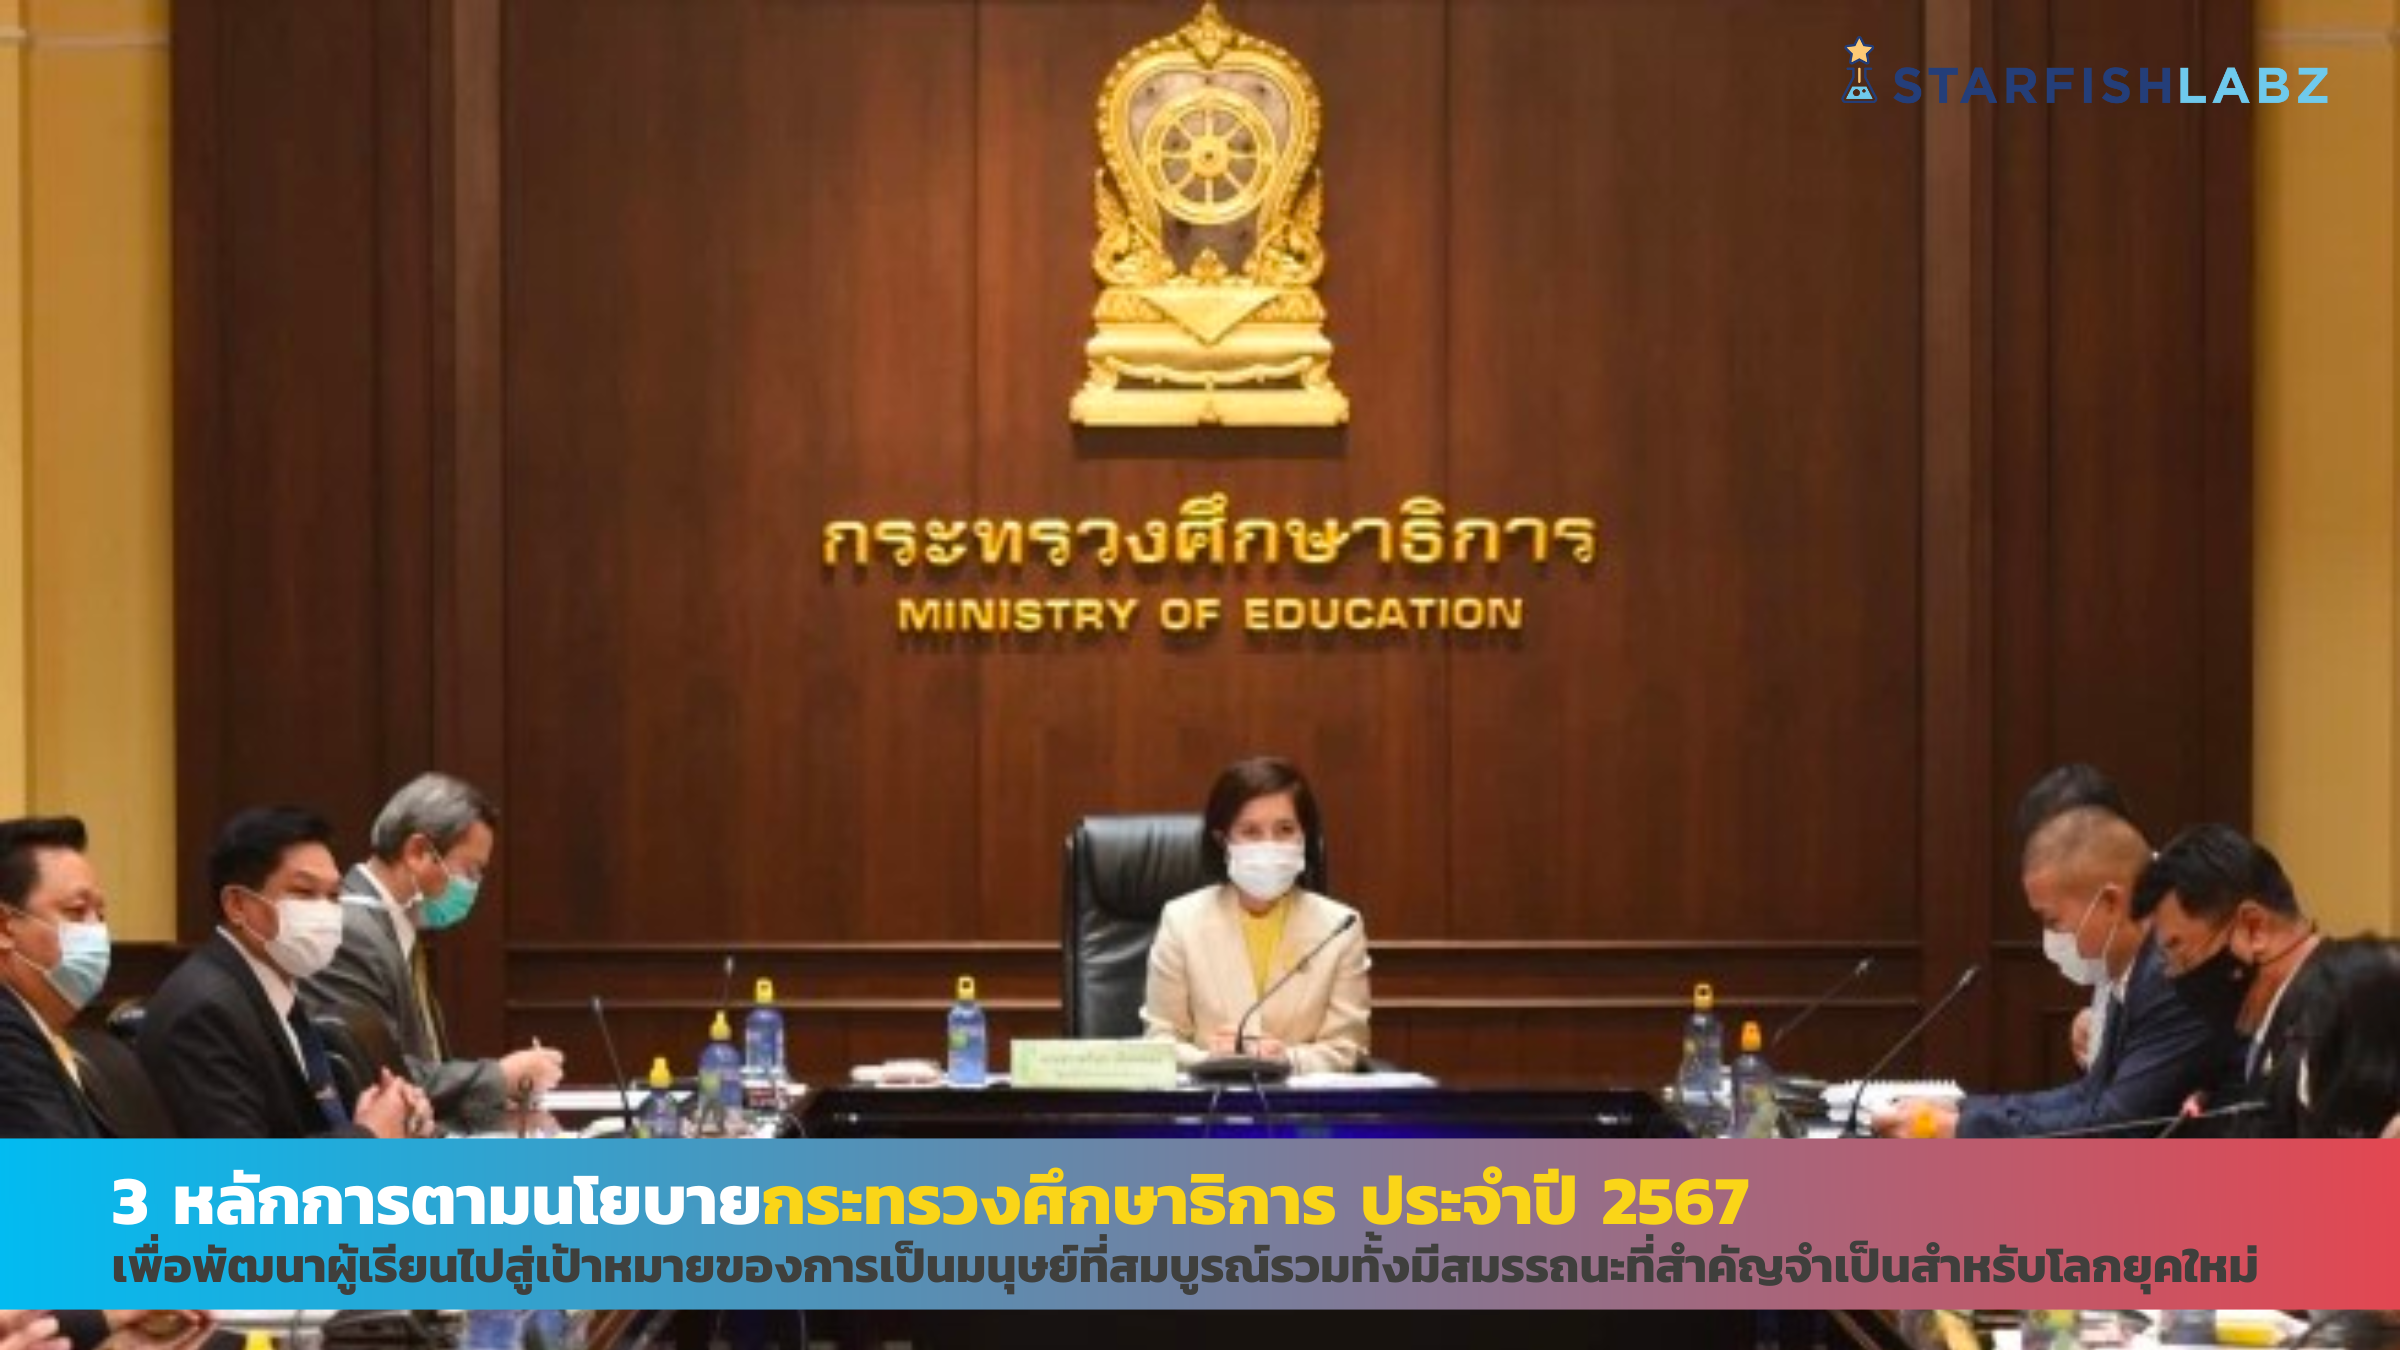 3 หลักการตามนโยบายการศึกษาไทย ปี 2567